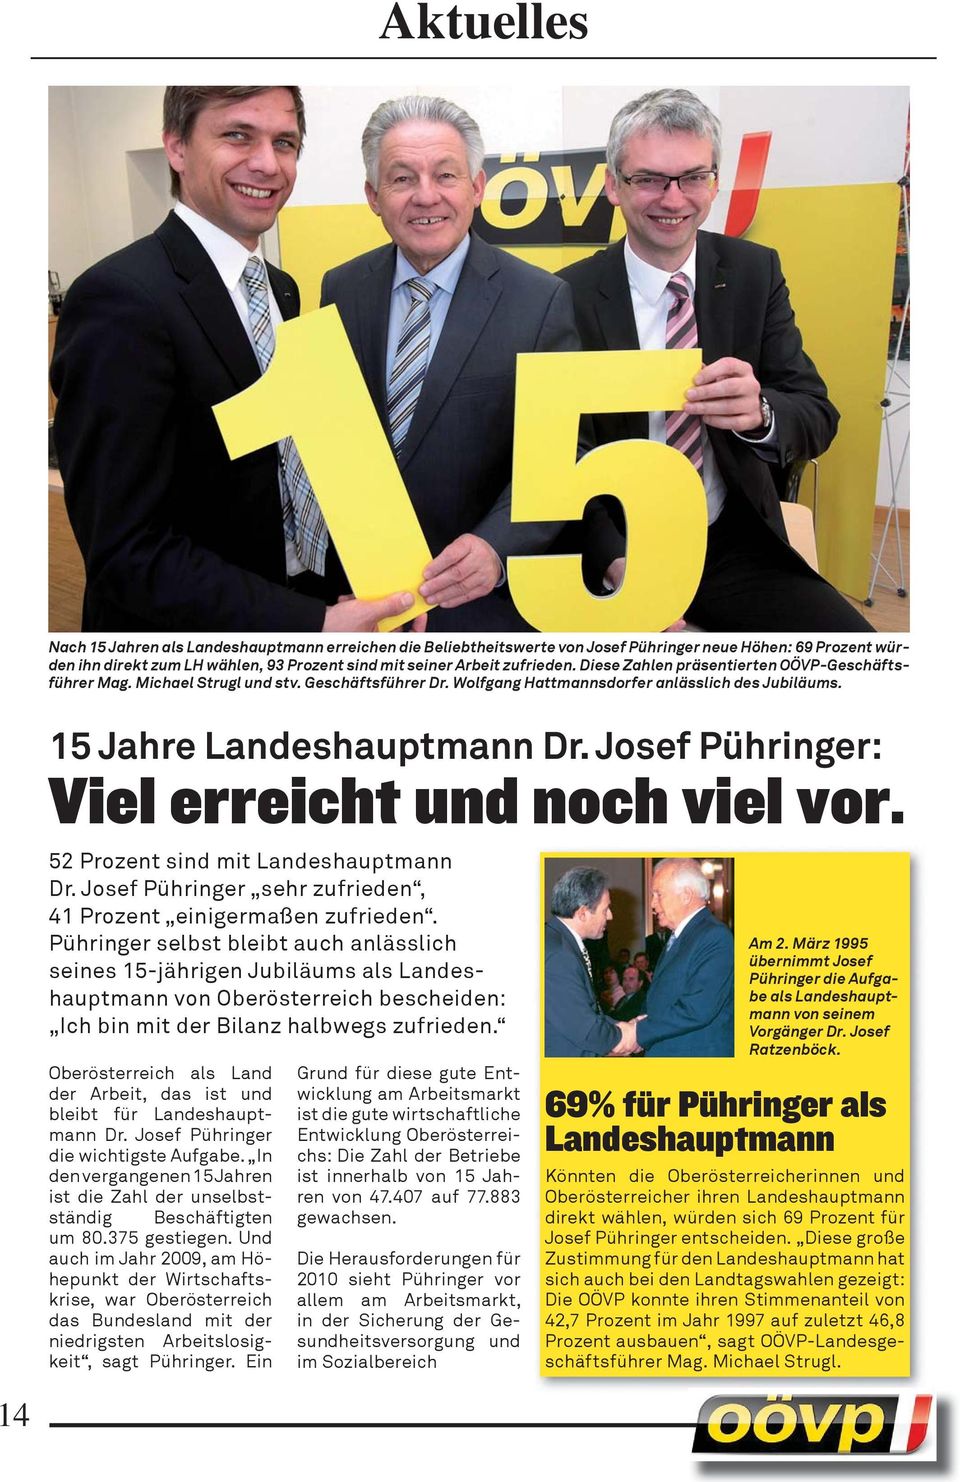 Josef Pühringer: Viel erreicht und noch viel vor. 52 Prozent sind mit Landeshauptmann Dr. Josef Pühringer sehr zufrieden, 41 Prozent einigermaßen zufrieden.